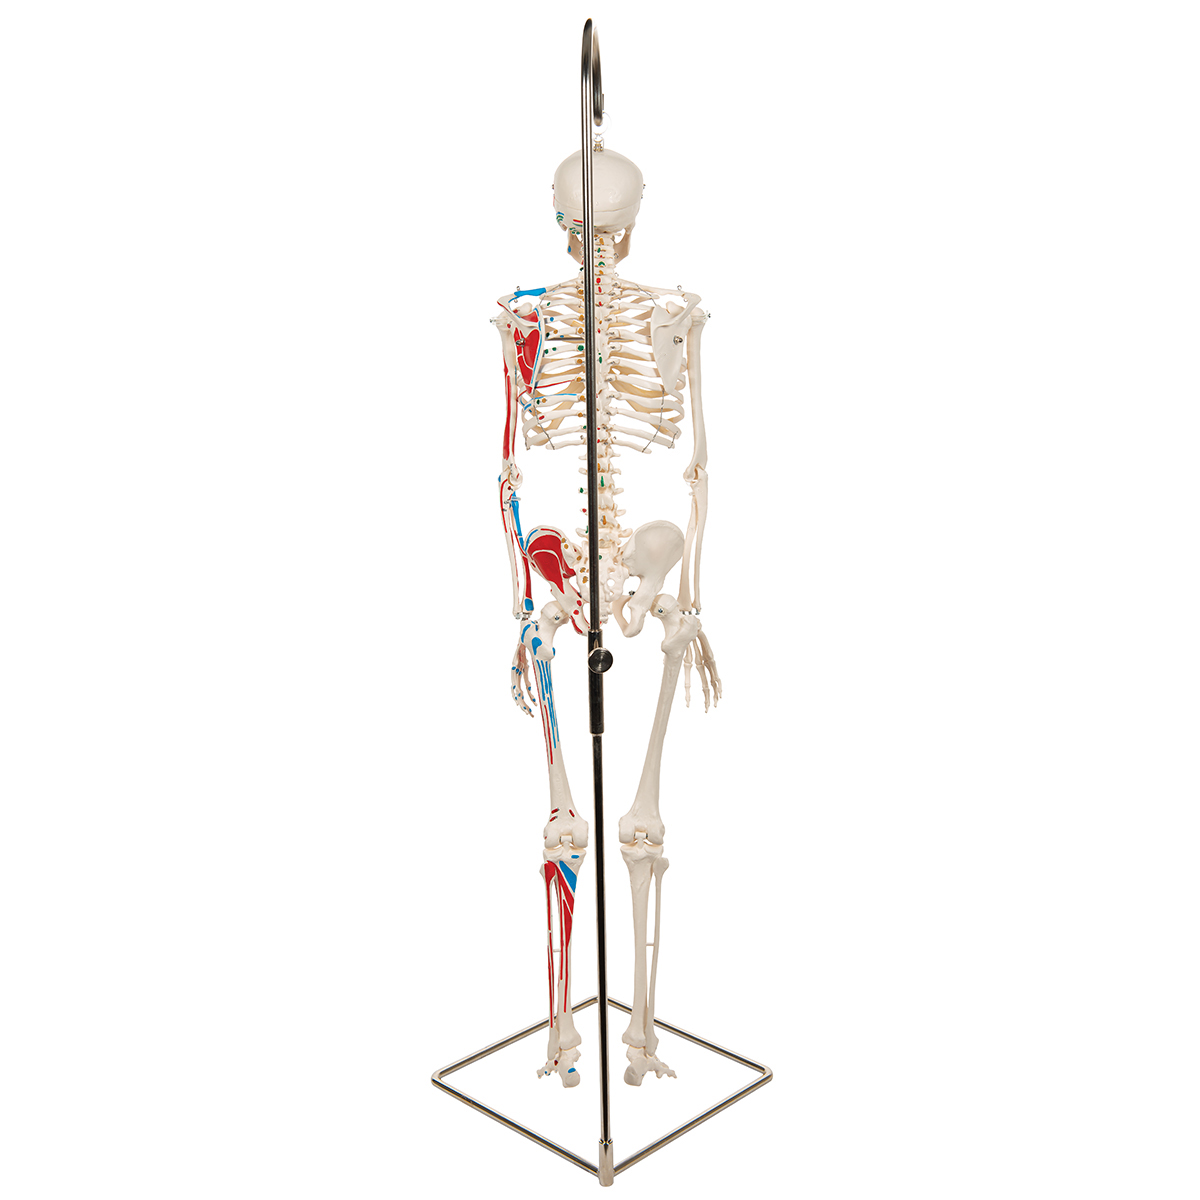 3B Scientific Mini Skeleton Painted